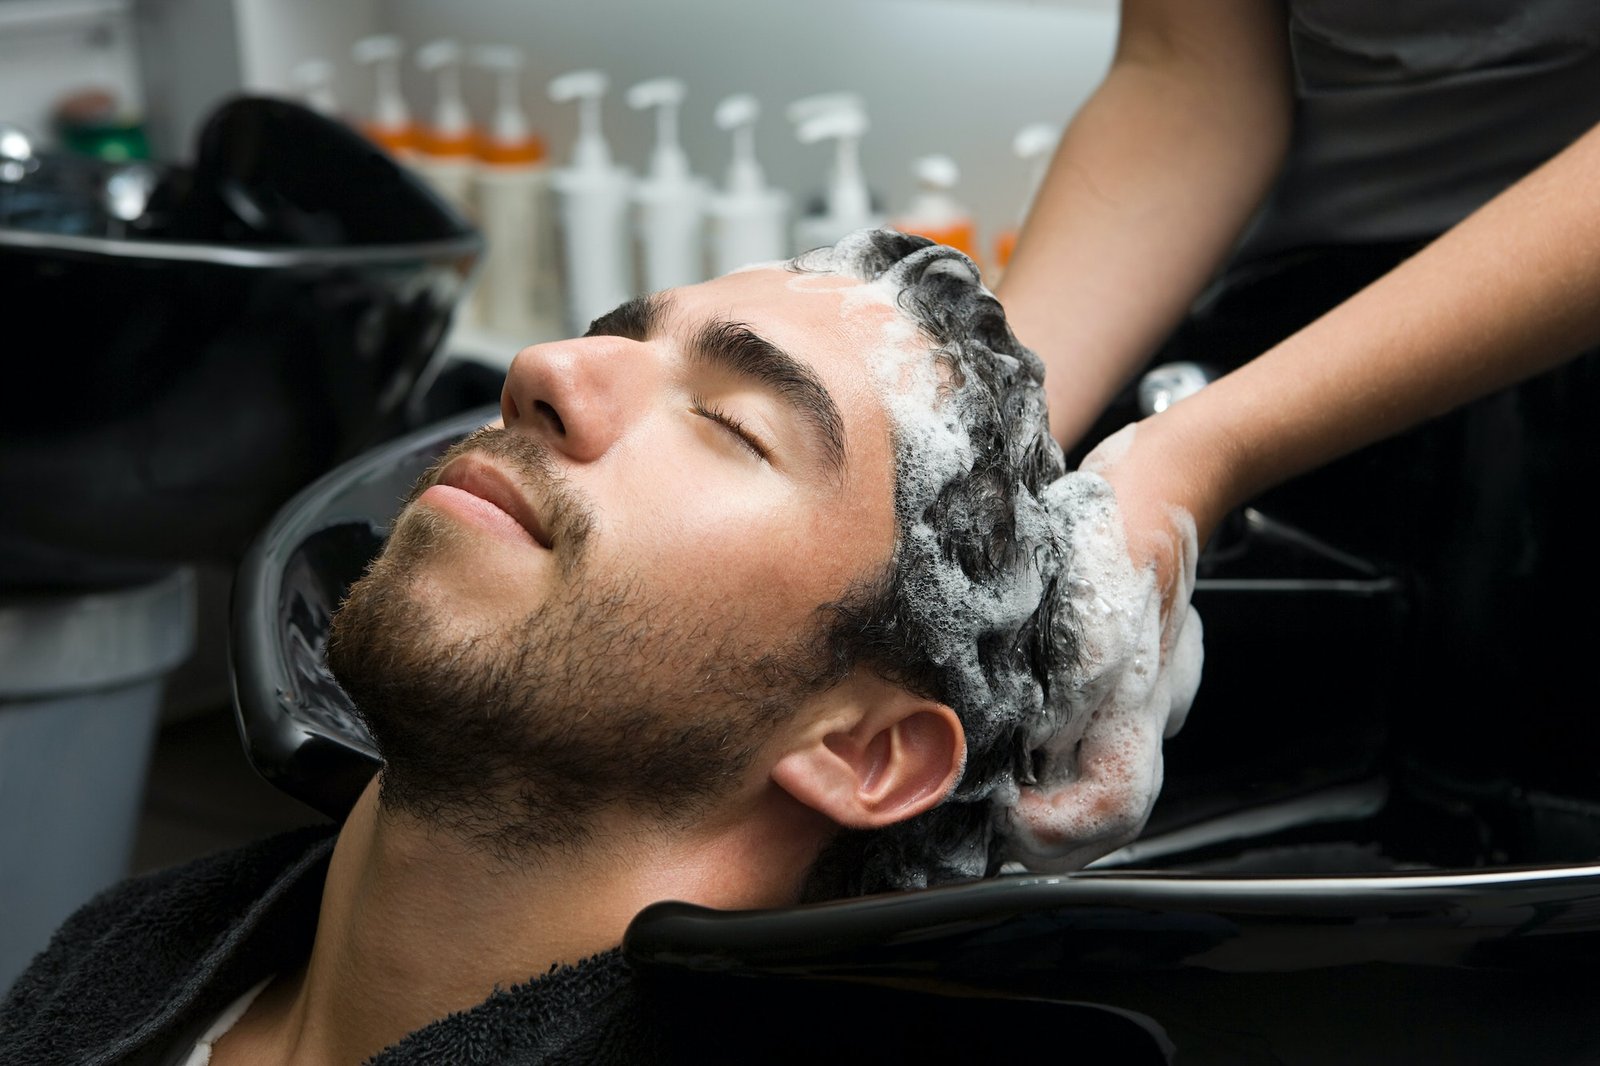 Hun masserer så forsiktig shampooen inn i håret til mannen, og sørger for å dekke alle områder fra hodebunnen til tuppene. 